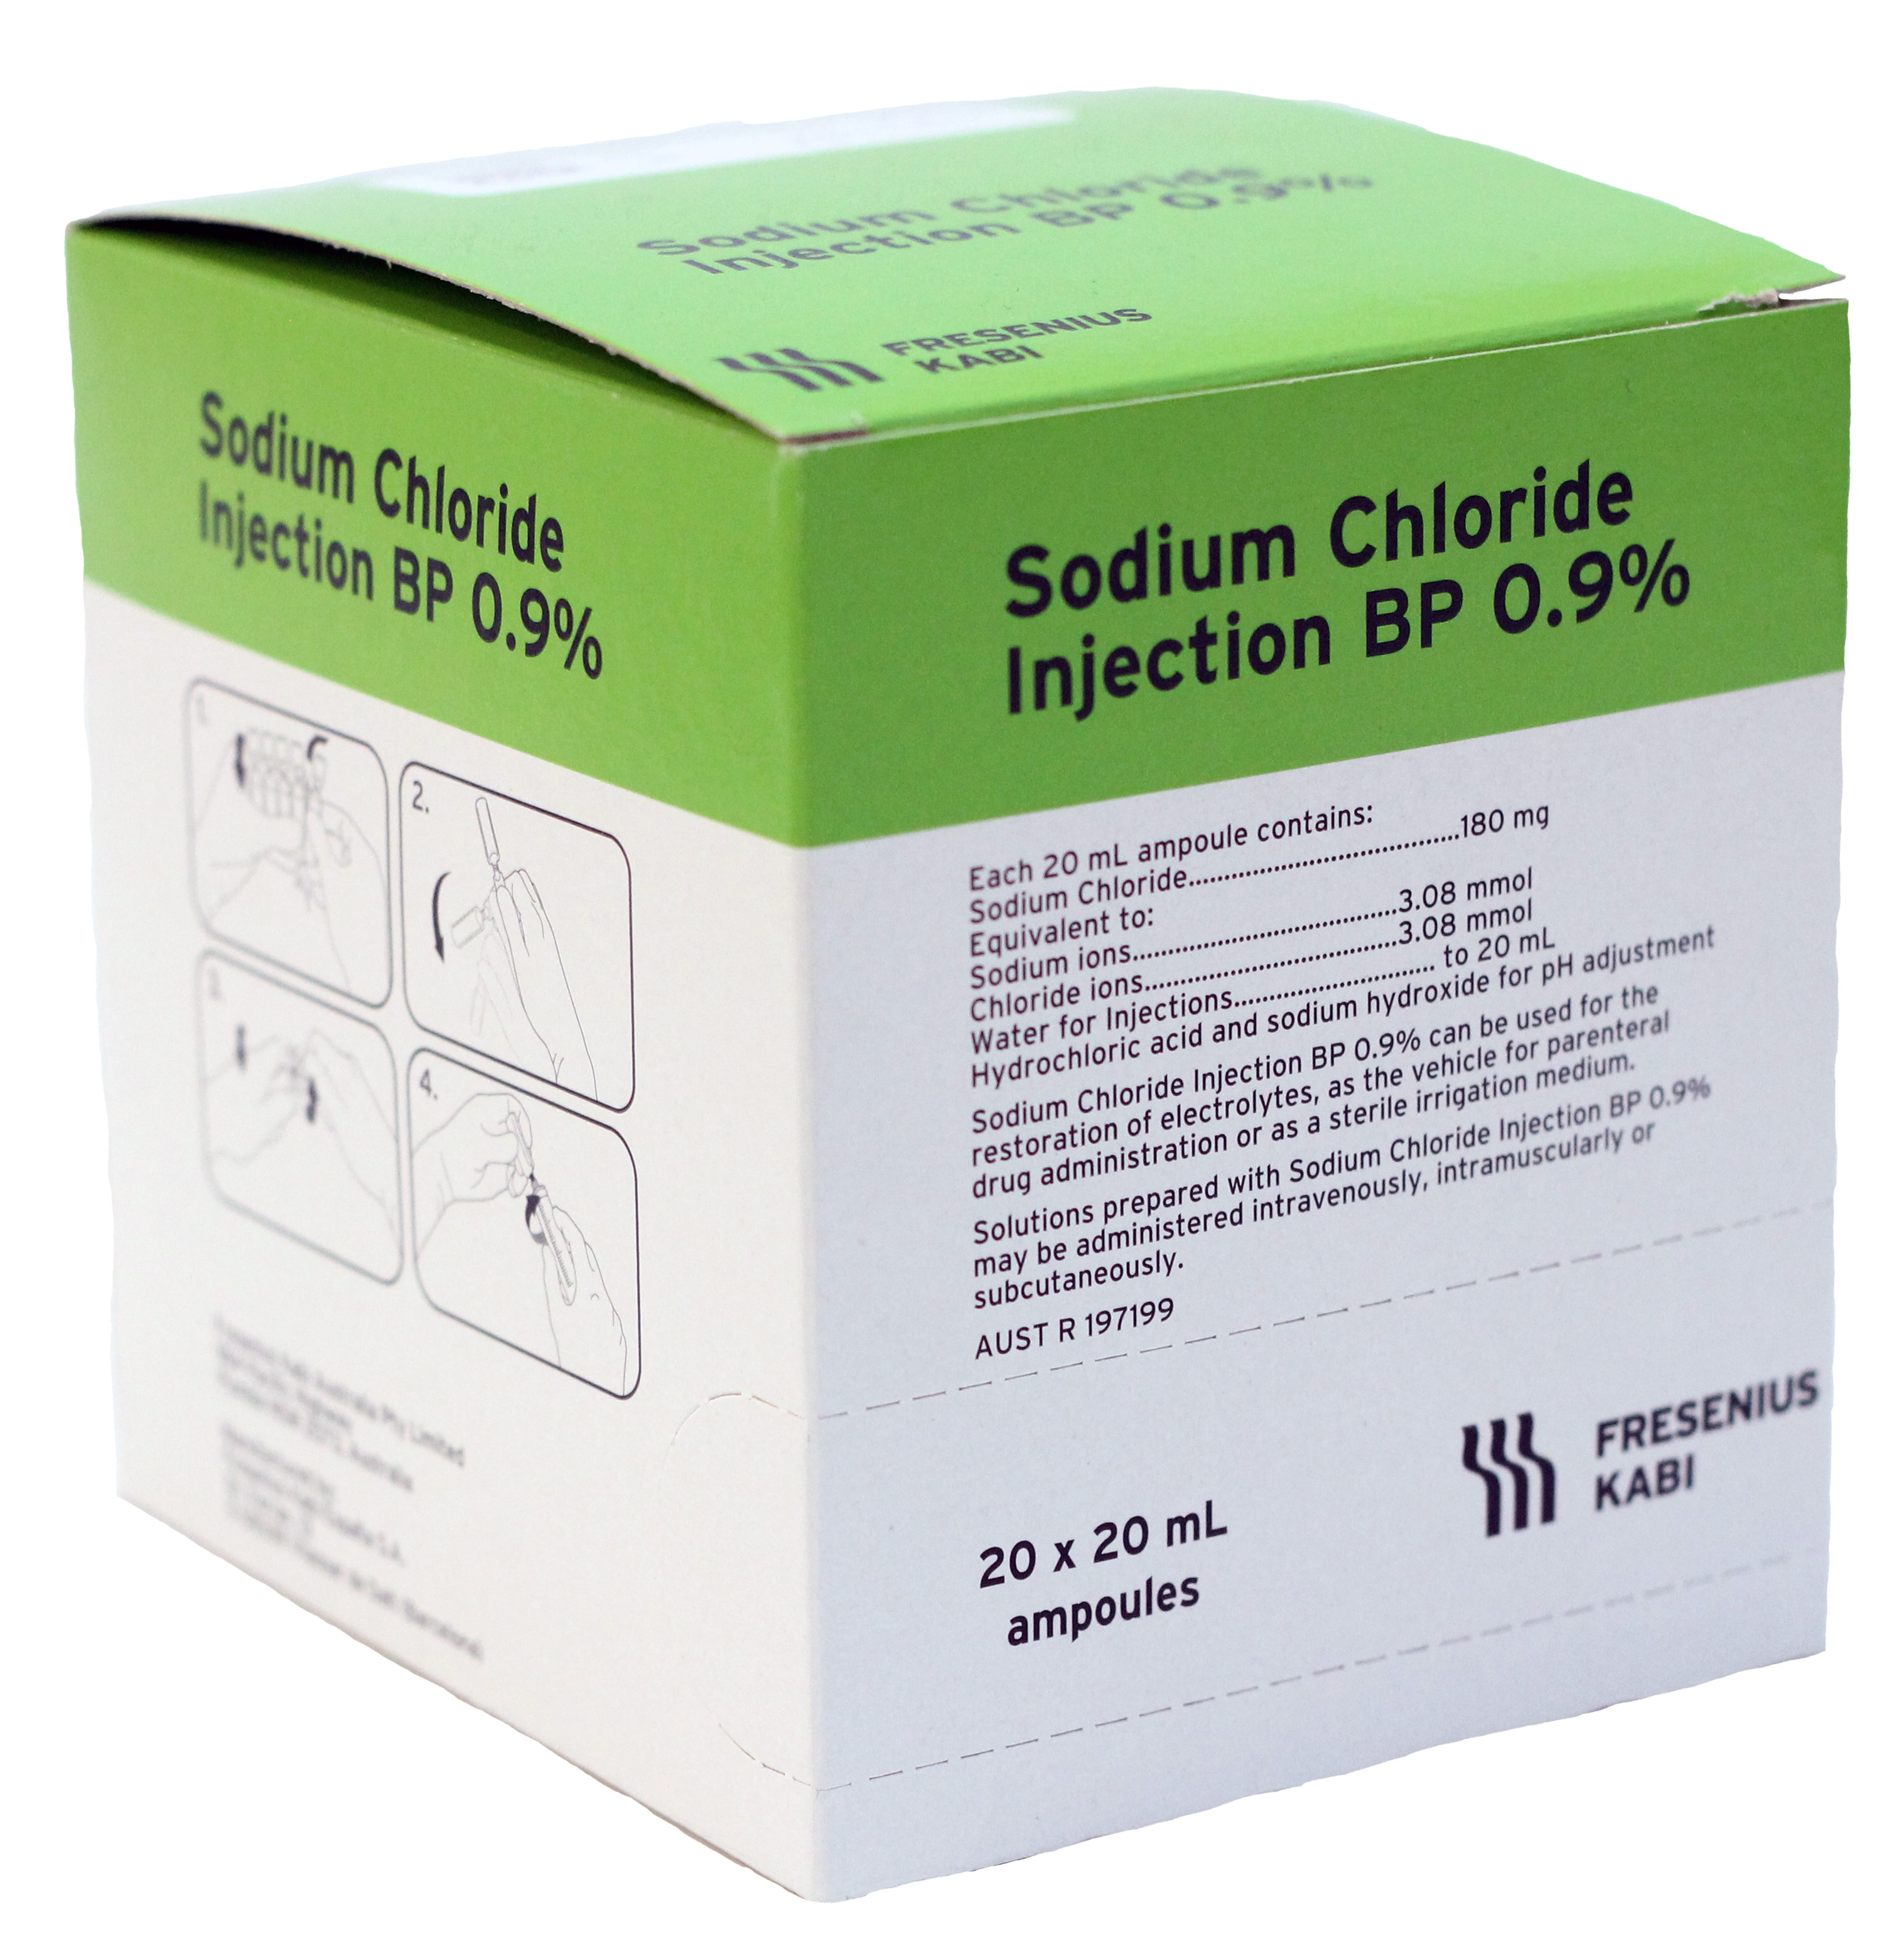 Fresenius Kabi Sodium Chloride 0.9% Injection 20ml - Box 20